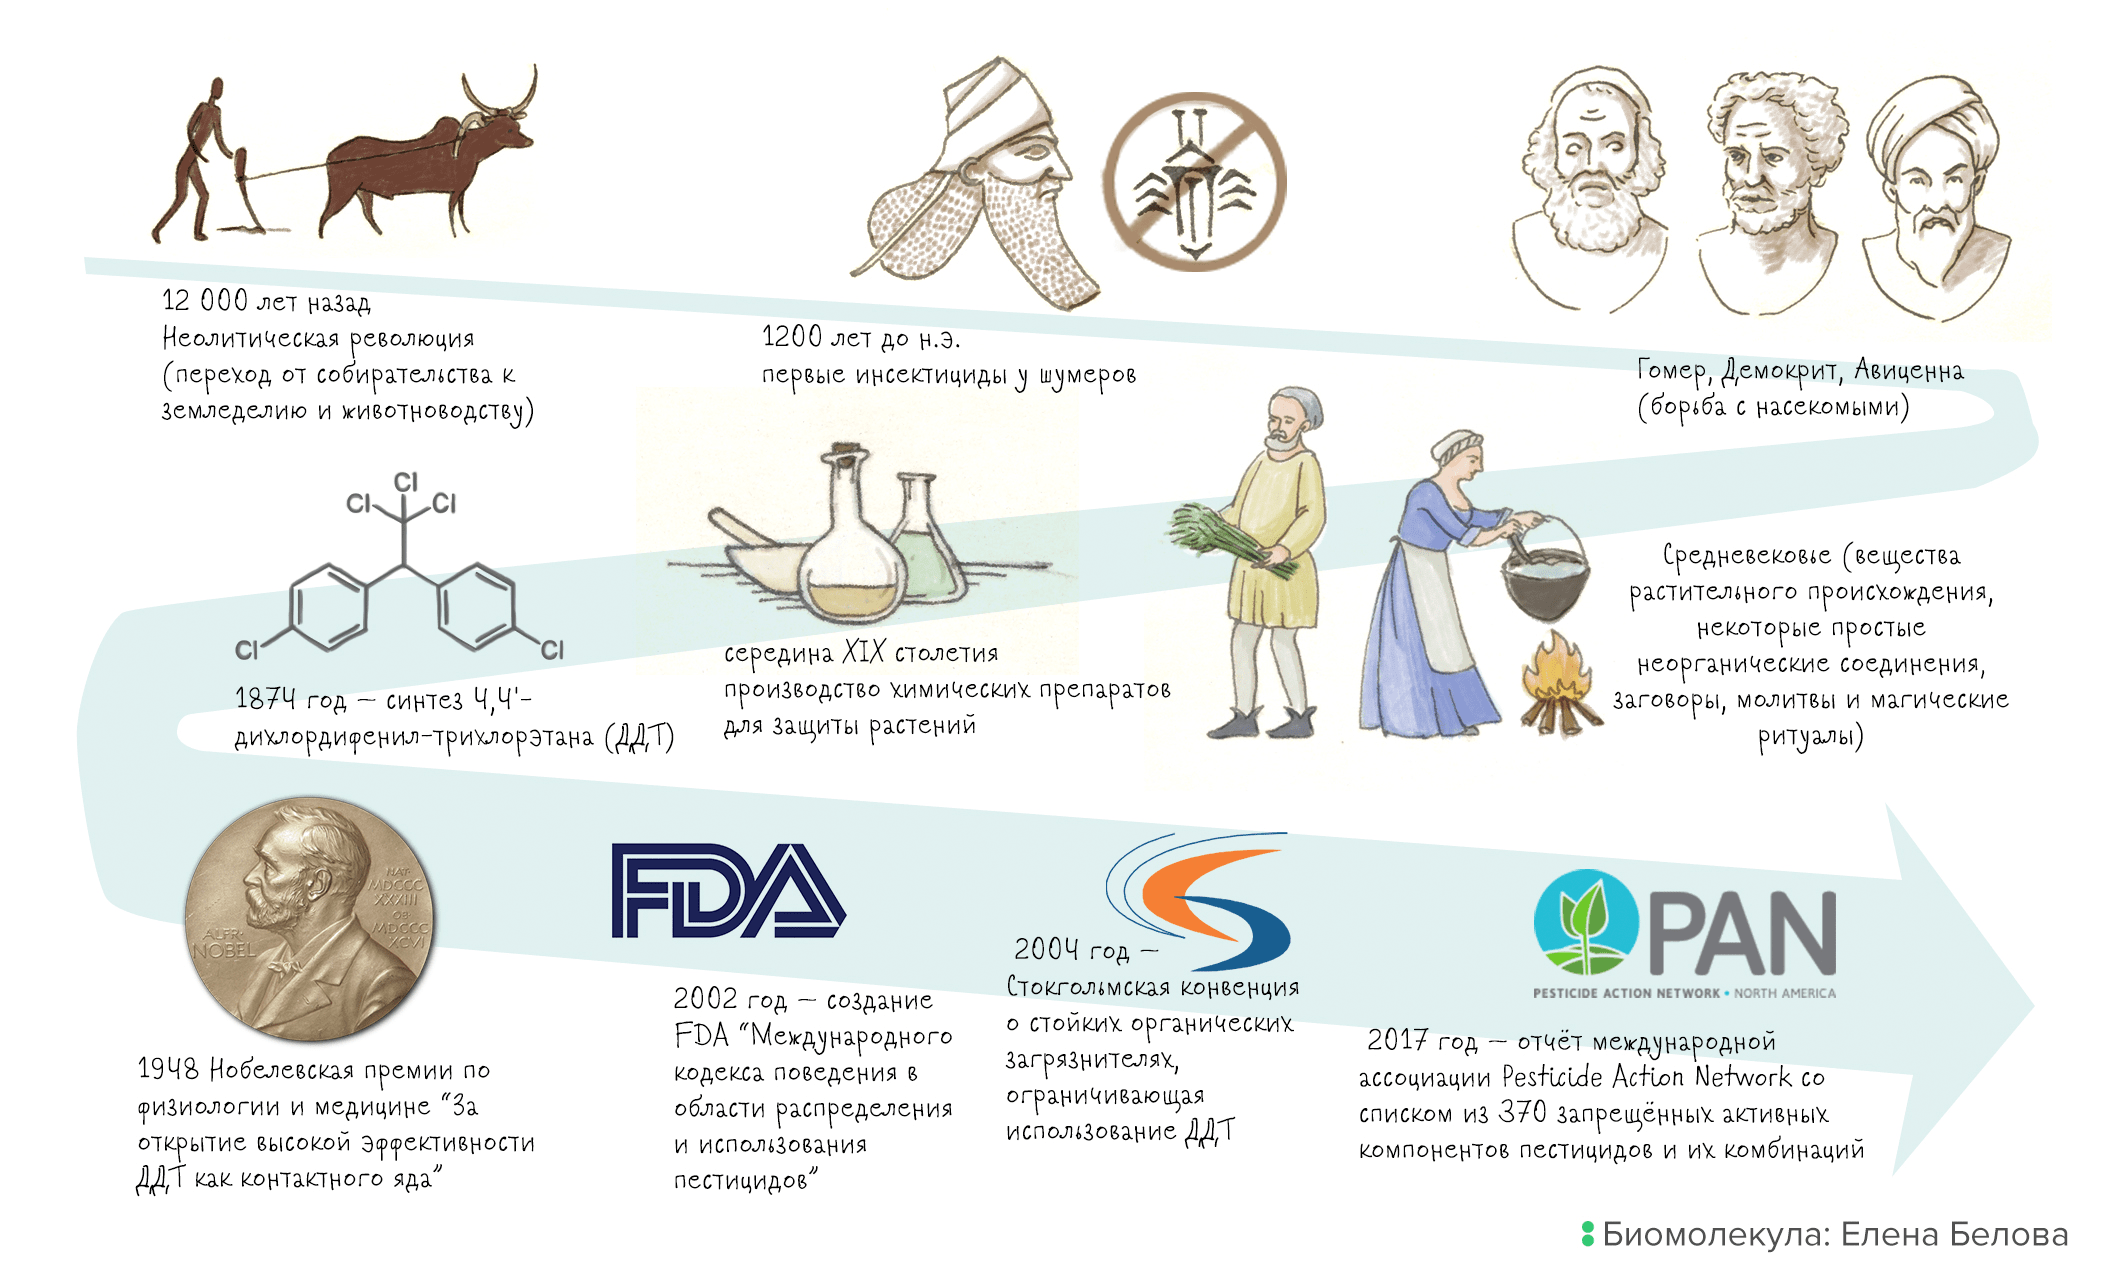 Основные вехи создания и применения пестицидов